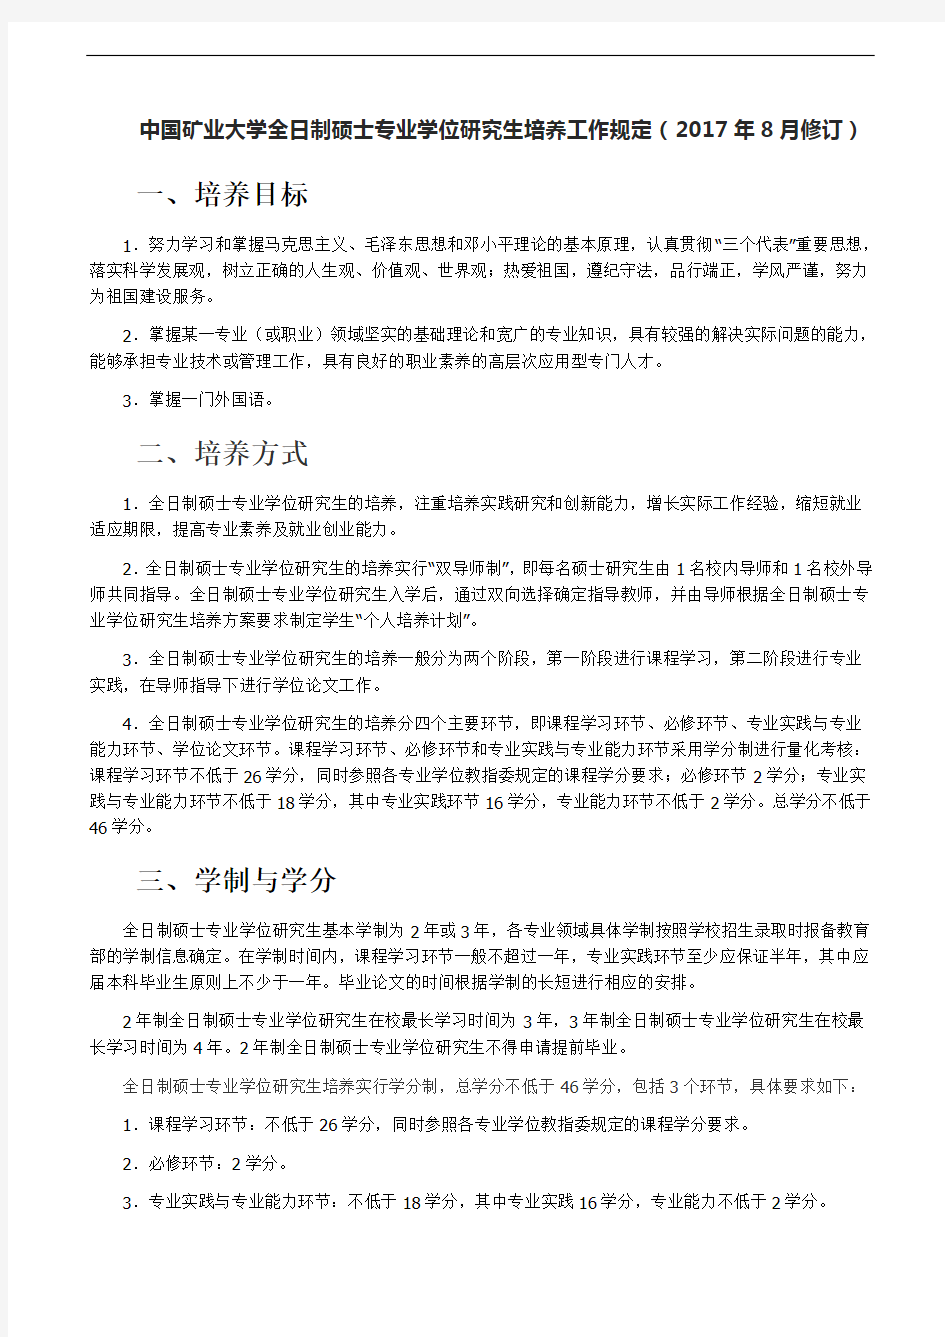 中国矿业大学全日制硕士专业学位研究生培养工作规定(2017年8月修订)